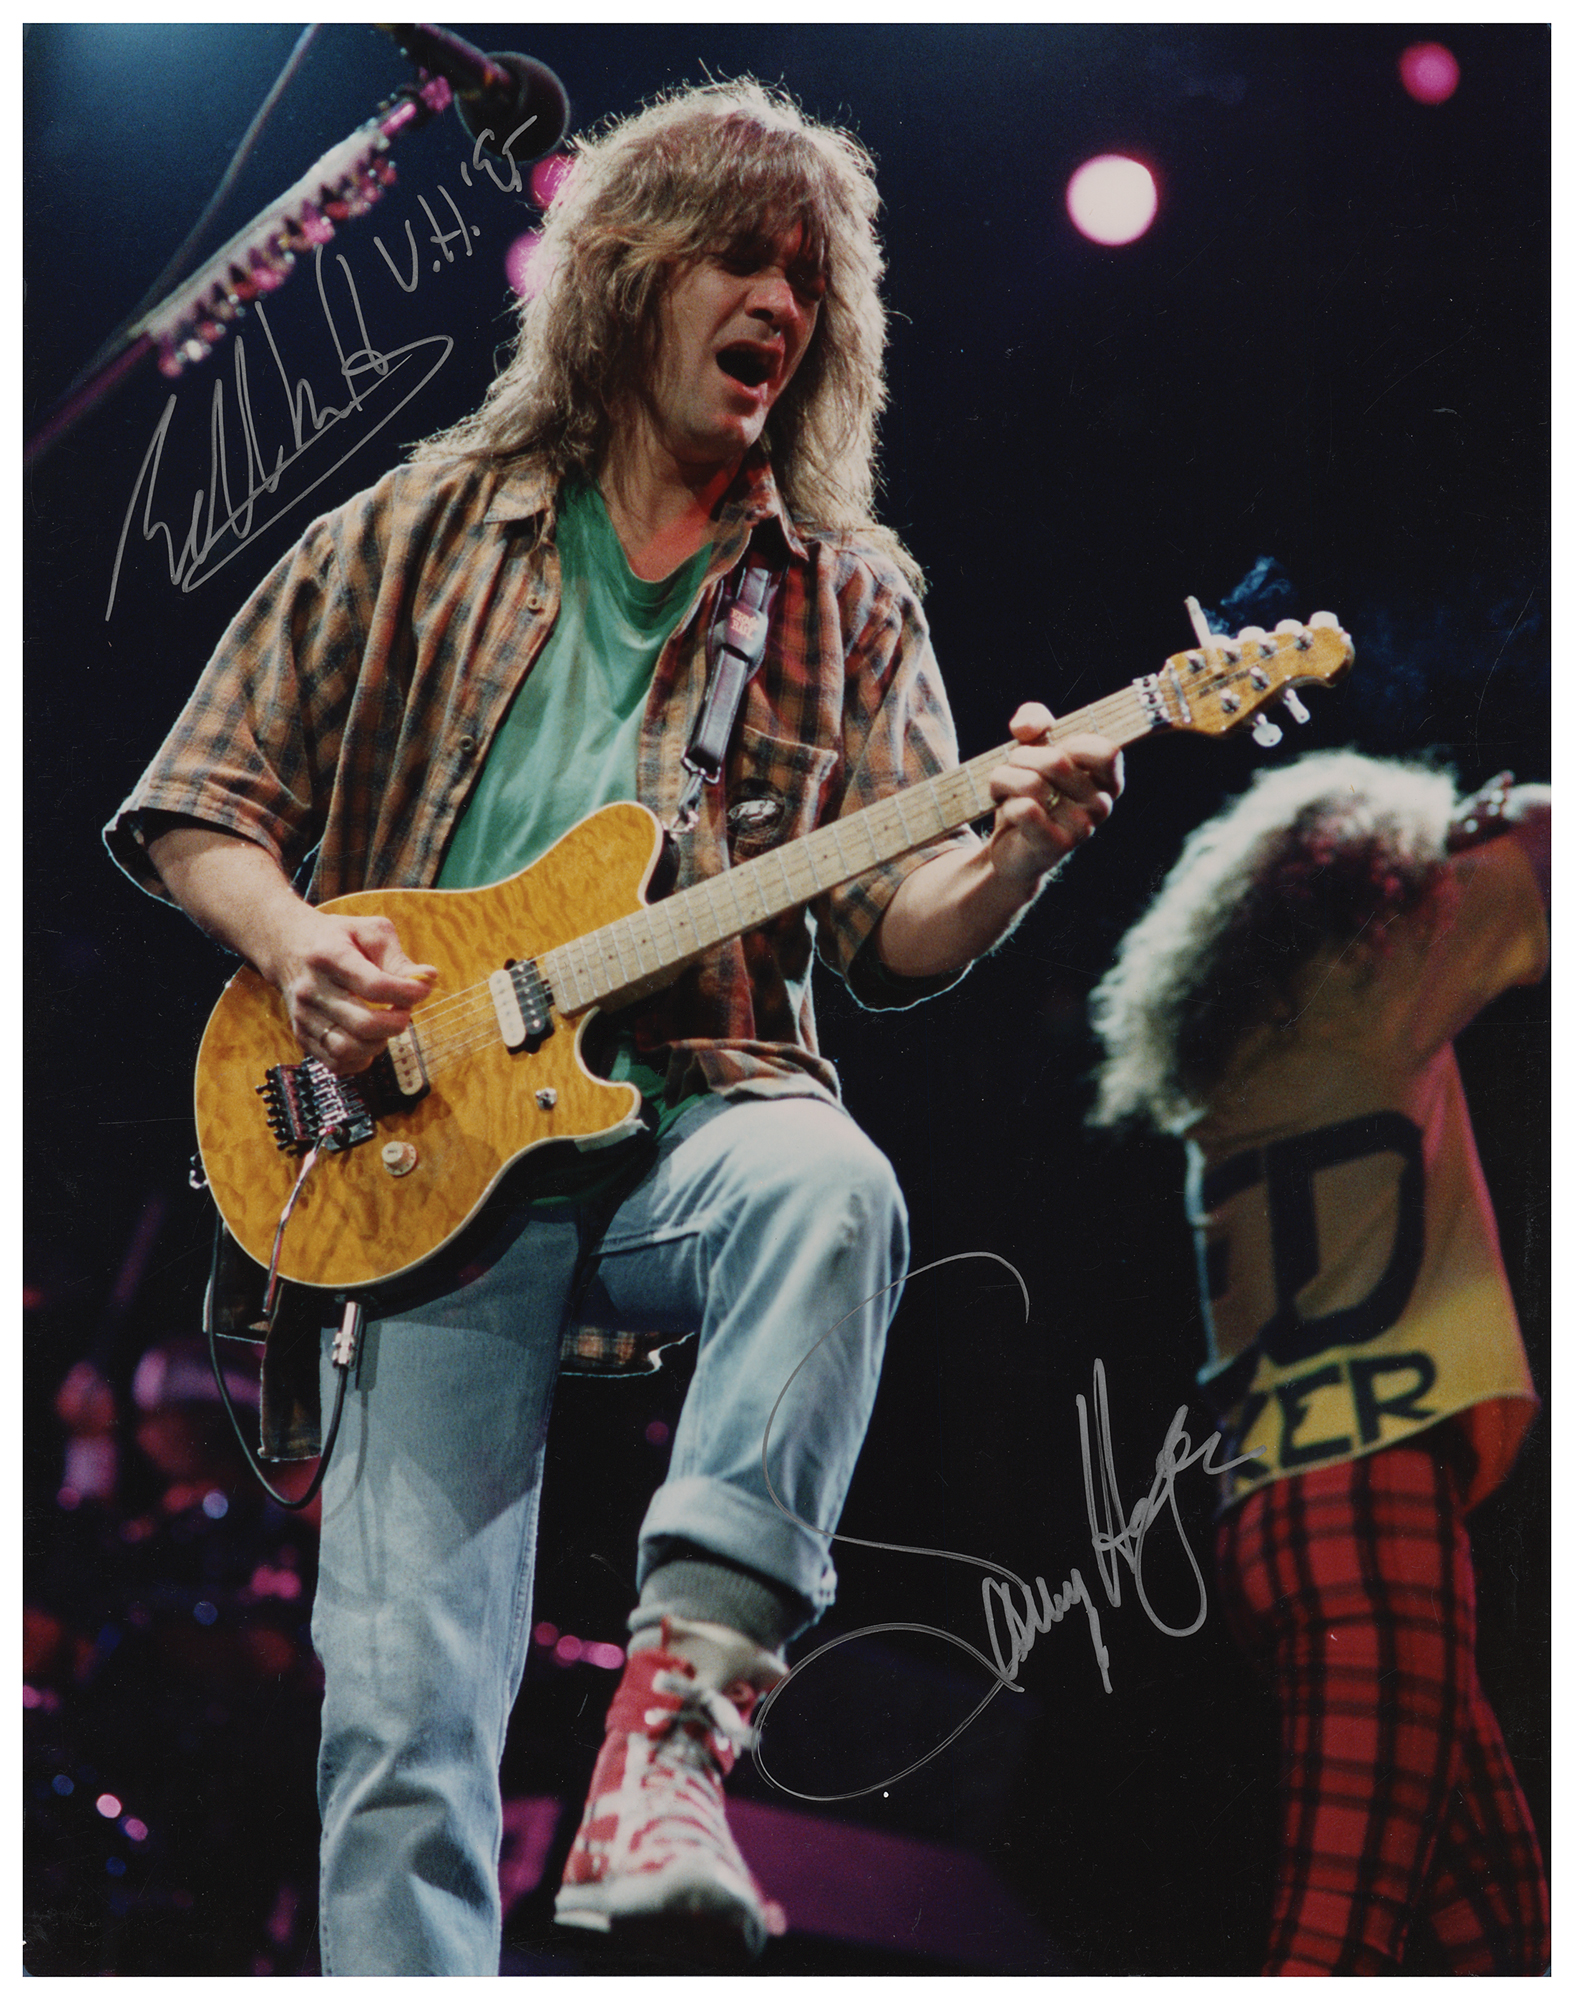 Lot #737 Eddie Van Halen and Sammy Hagar Signed Photograph